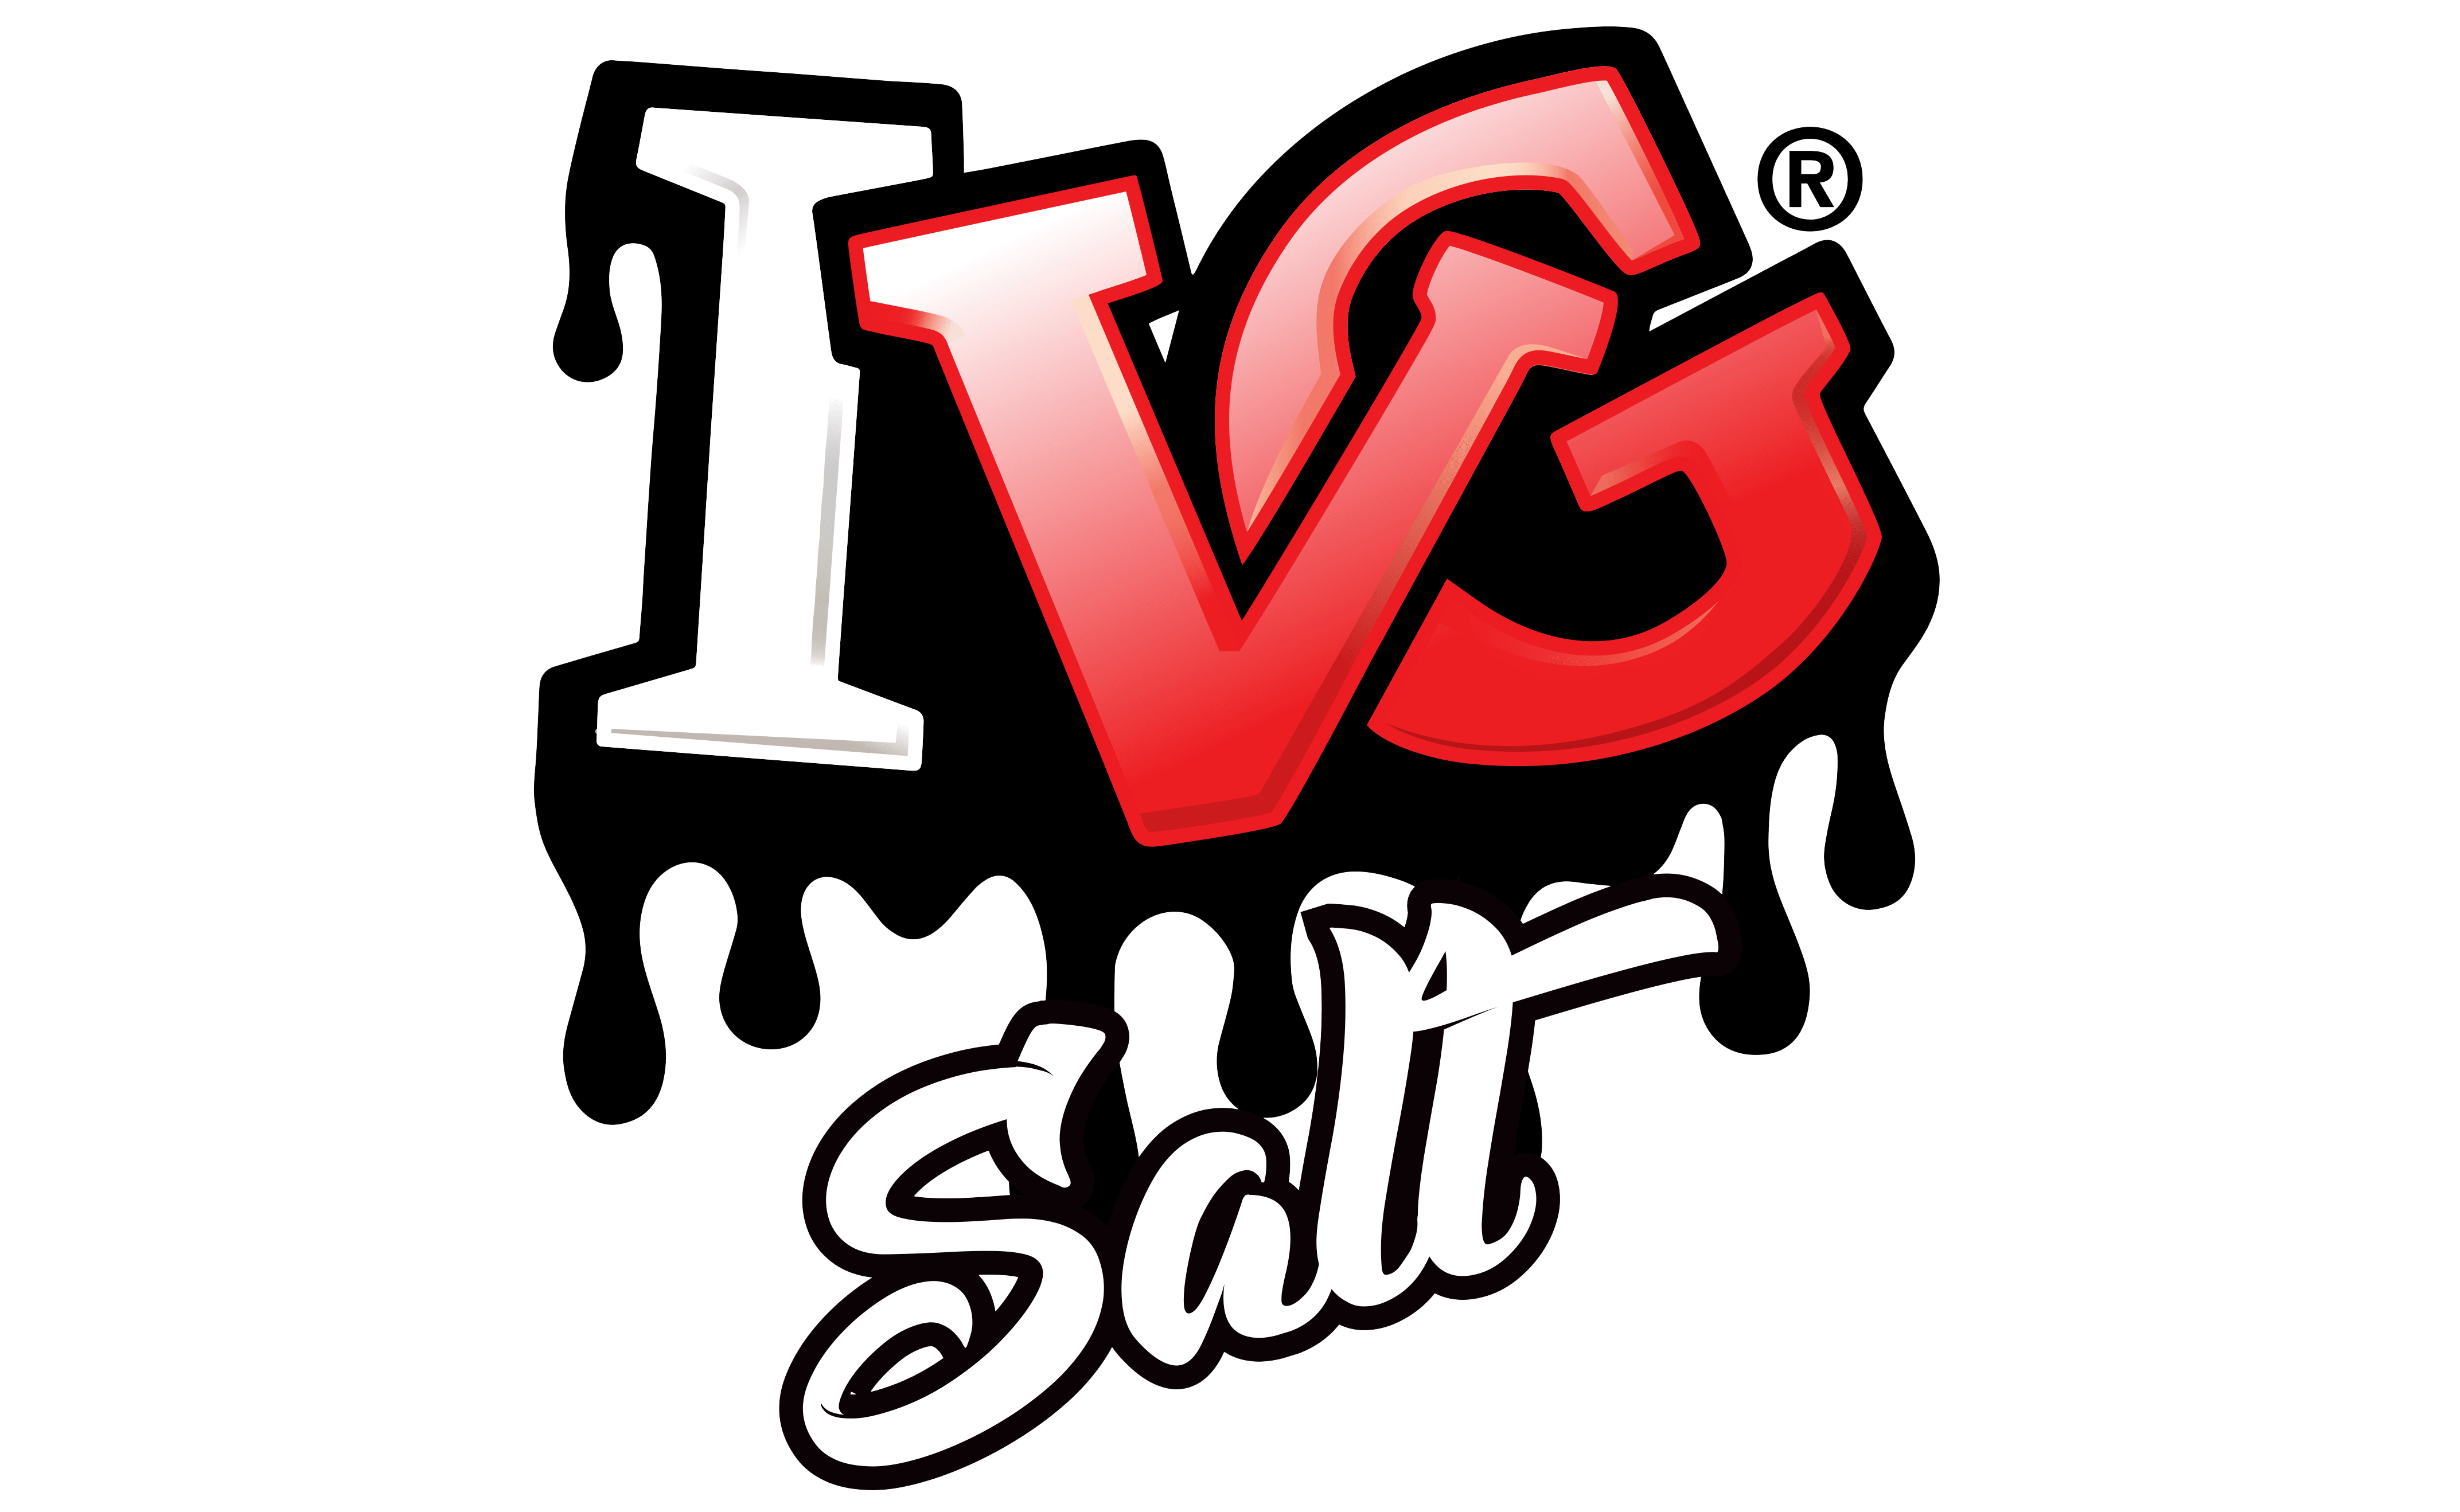 ivg-salt-logo_1